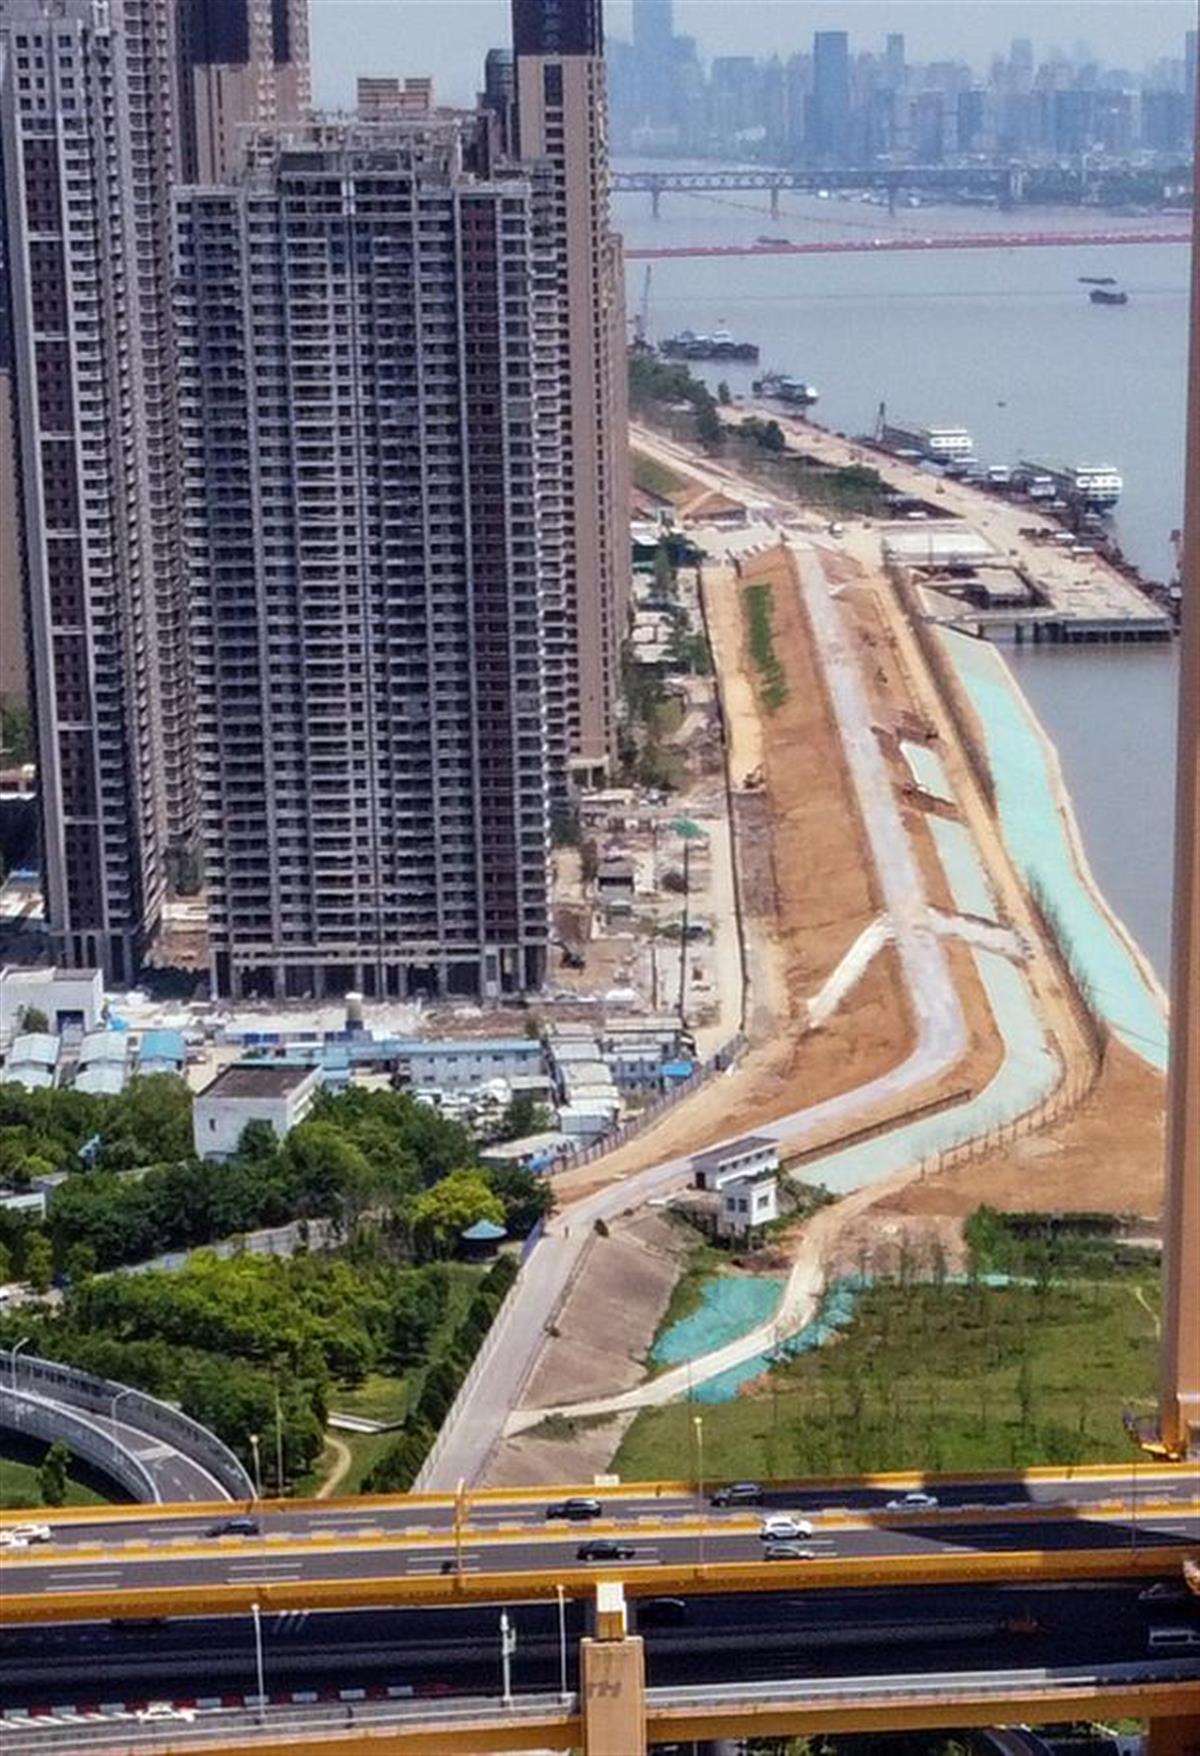 武汉沿江腹地3公里将打造一批新景观